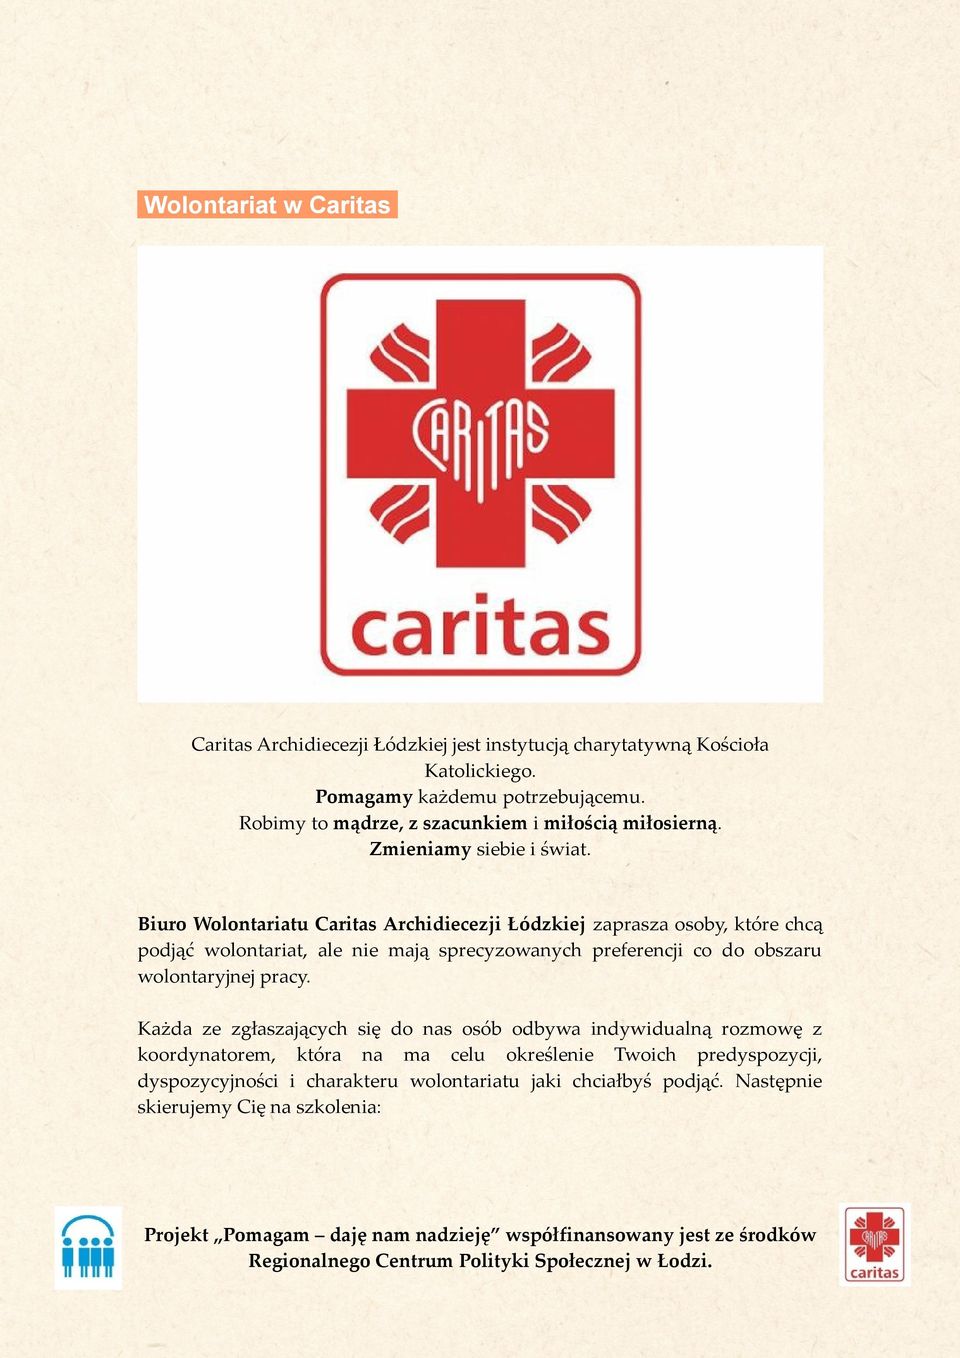 Biuro Wolontariatu Caritas Archidiecezji Łódzkiej zaprasza osoby, które chcą podjąć wolontariat, ale nie mają sprecyzowanych preferencji co do obszaru